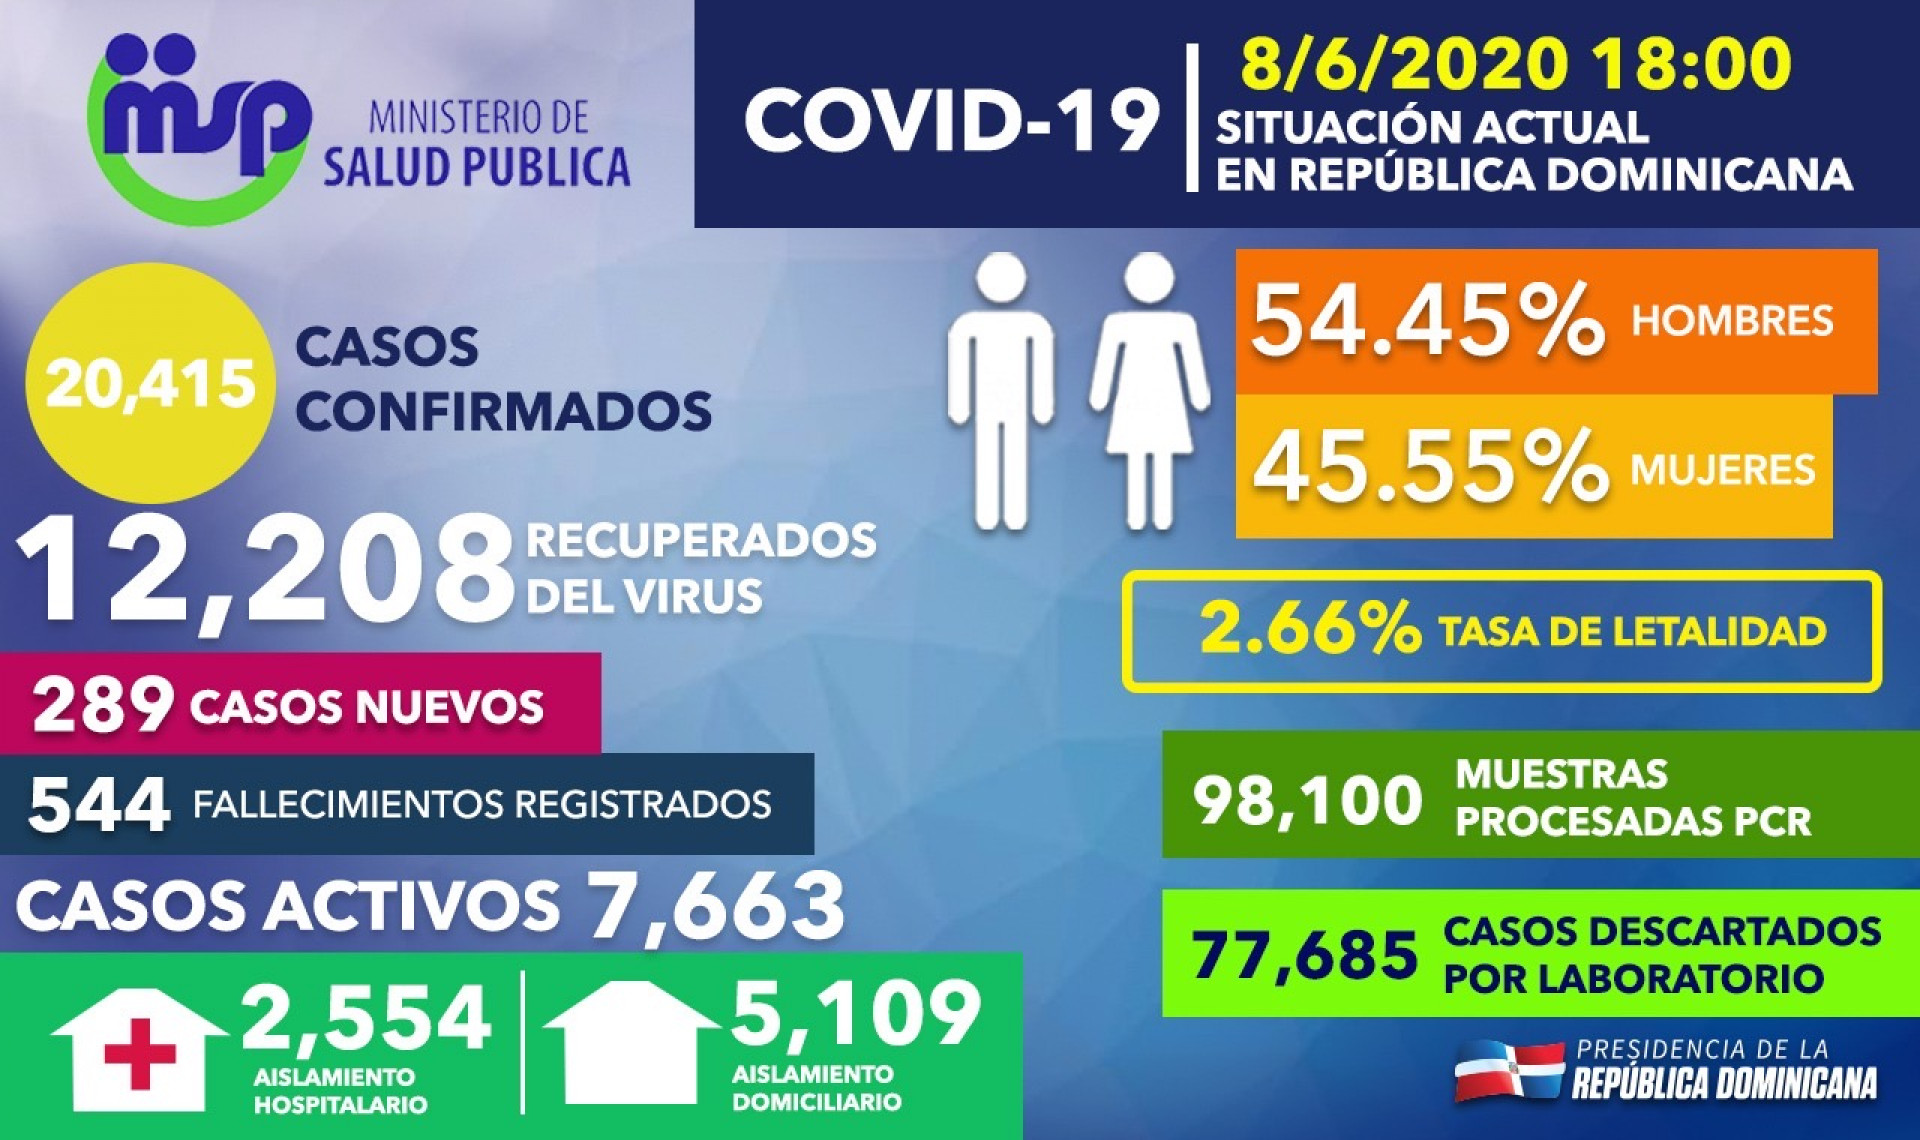 REPÚBLICA DOMINICANA: Tasa de letalidad en RD por COVID-19 se reduce a 2.66%; más de 77,600 casos sospechosos han sido descartados mediante pruebas PCR